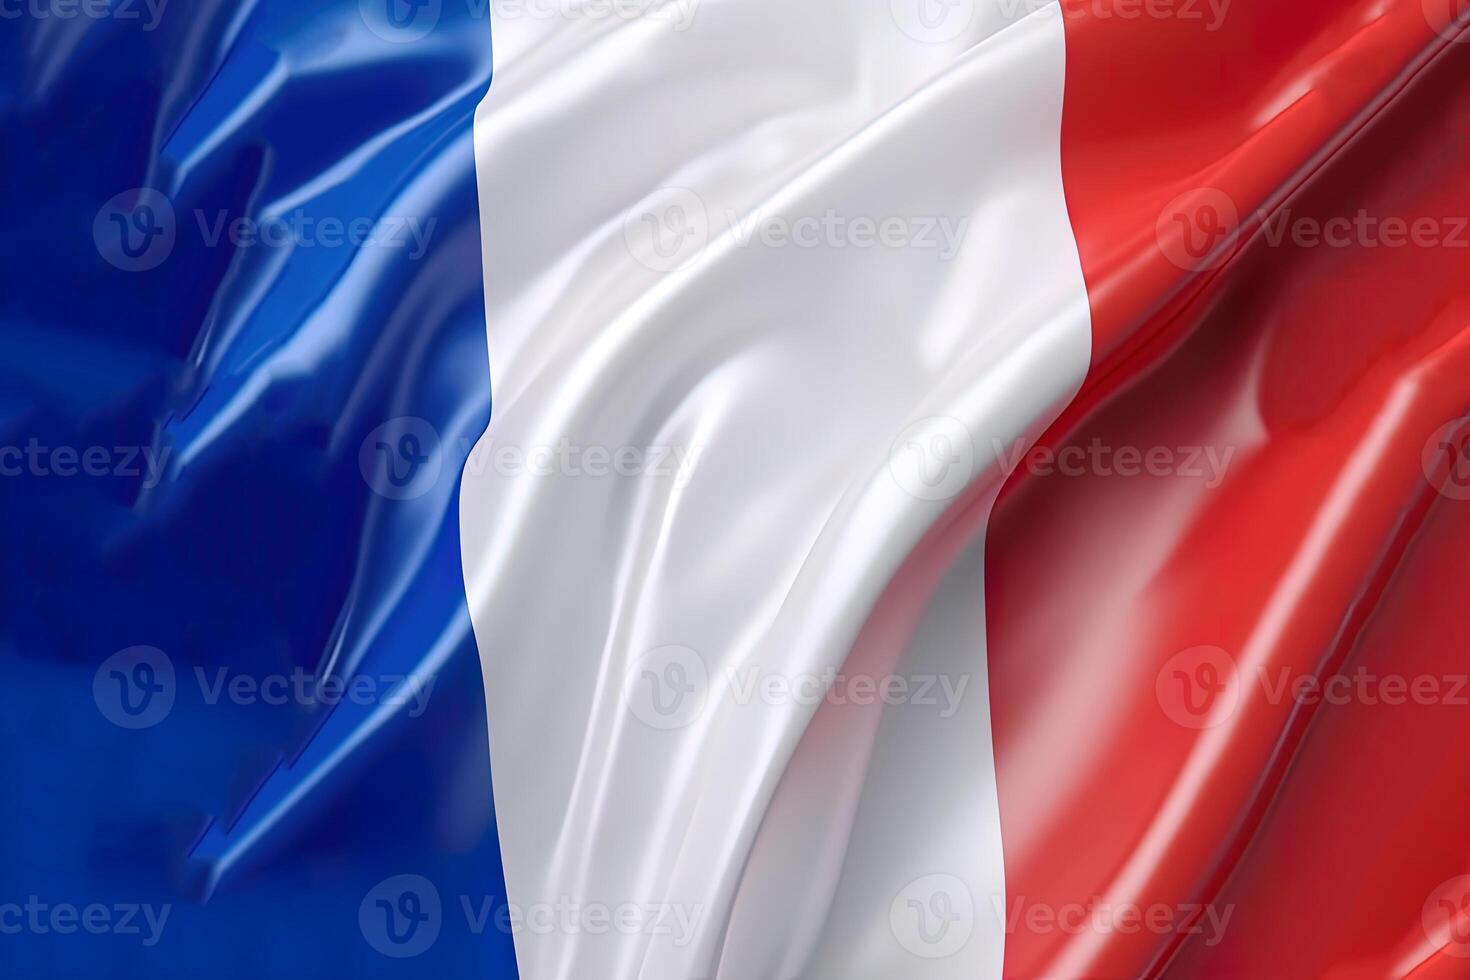 blauw, wit en rood achtergrond, golvend de nationaal vlag van Frankrijk, zwaaide een zeer gedetailleerd detailopname. ai gegenereerd foto